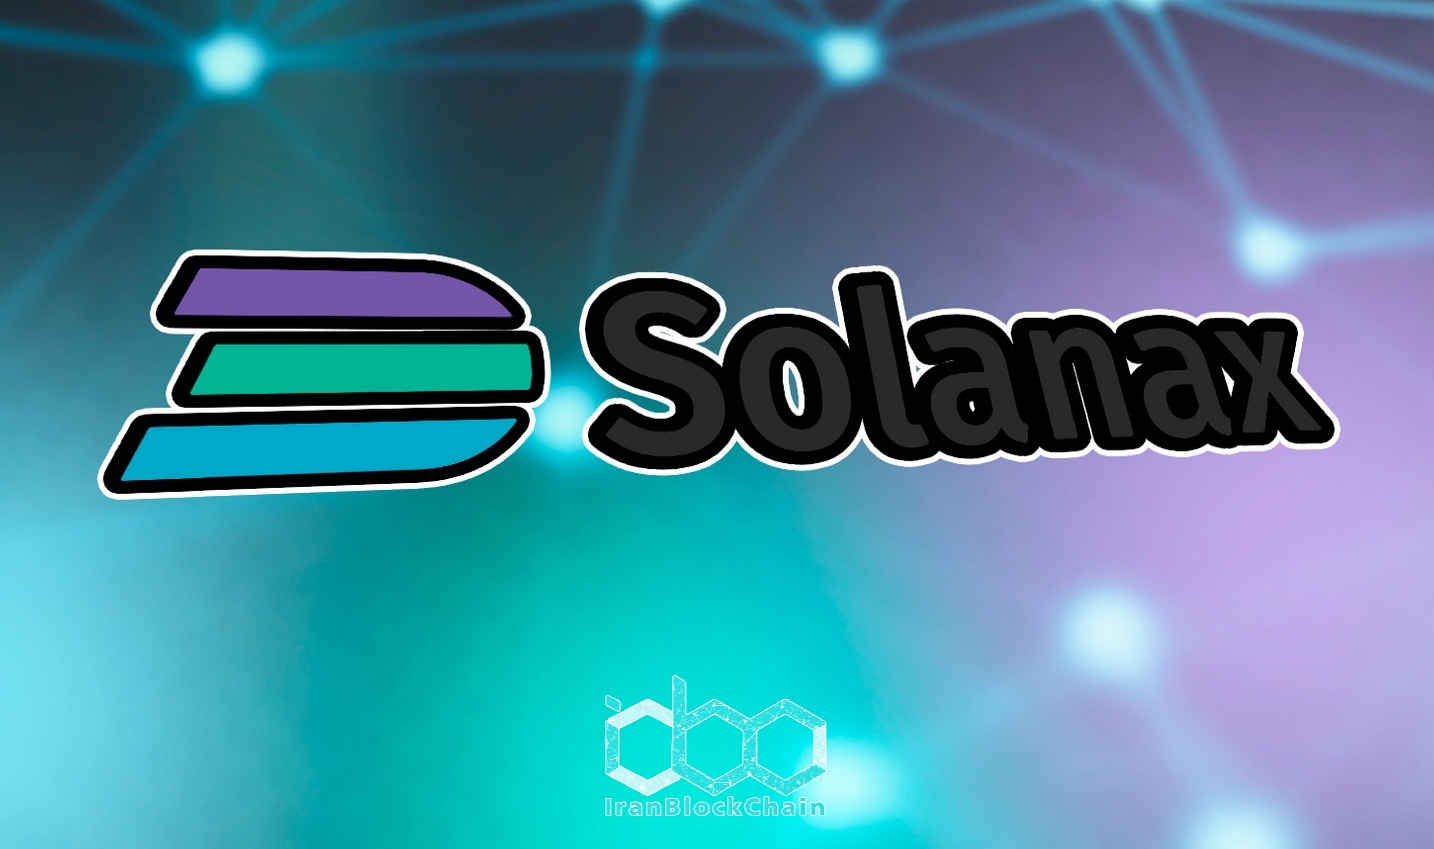 Solanax اکنون رسماً بخشی از اکوسیستم Solana شد